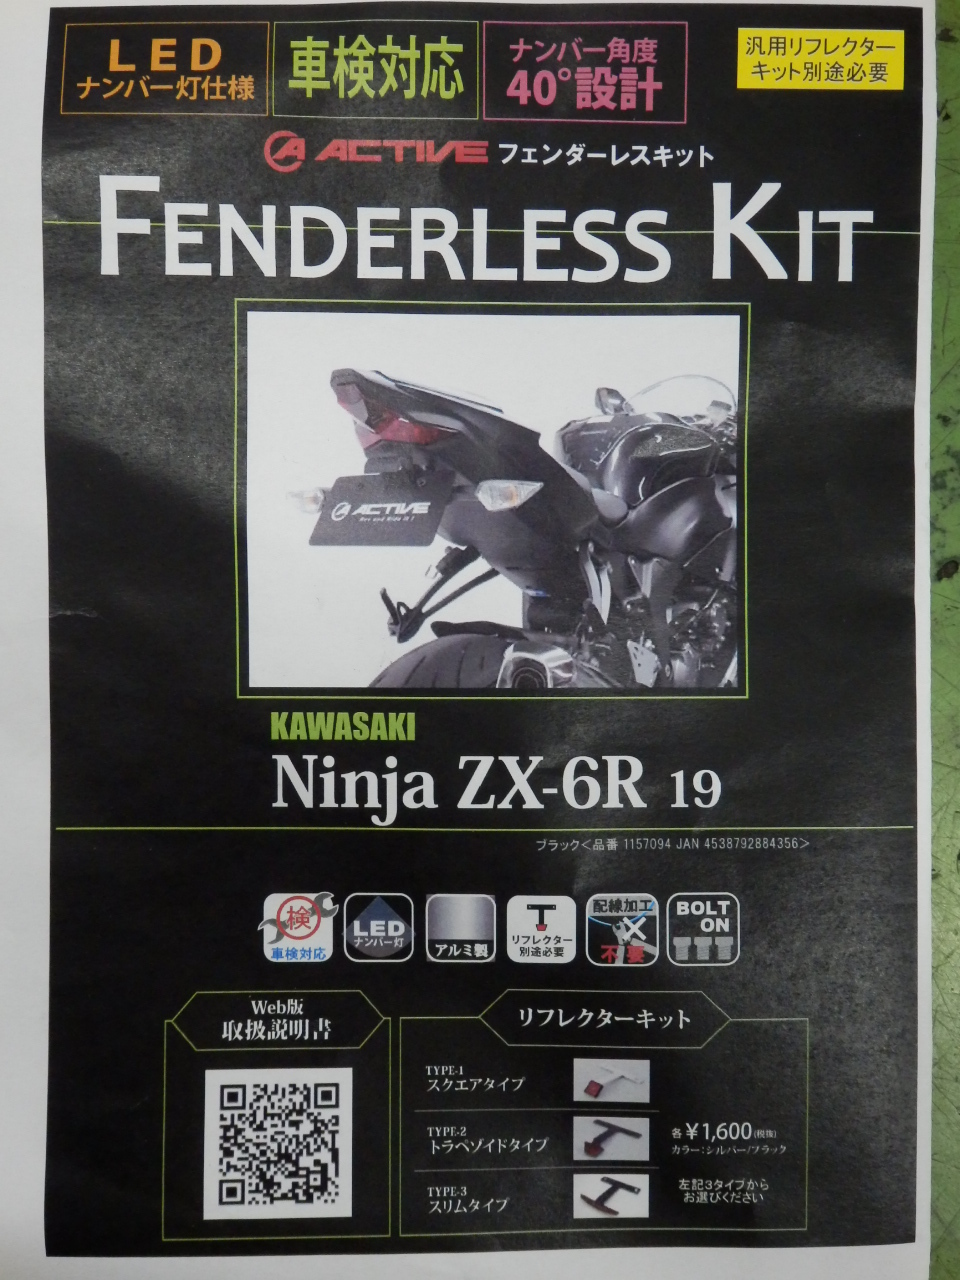 カワサキ ZX-6R】Active フェンダーレスKIT 装着しました! - NAPS-ON 